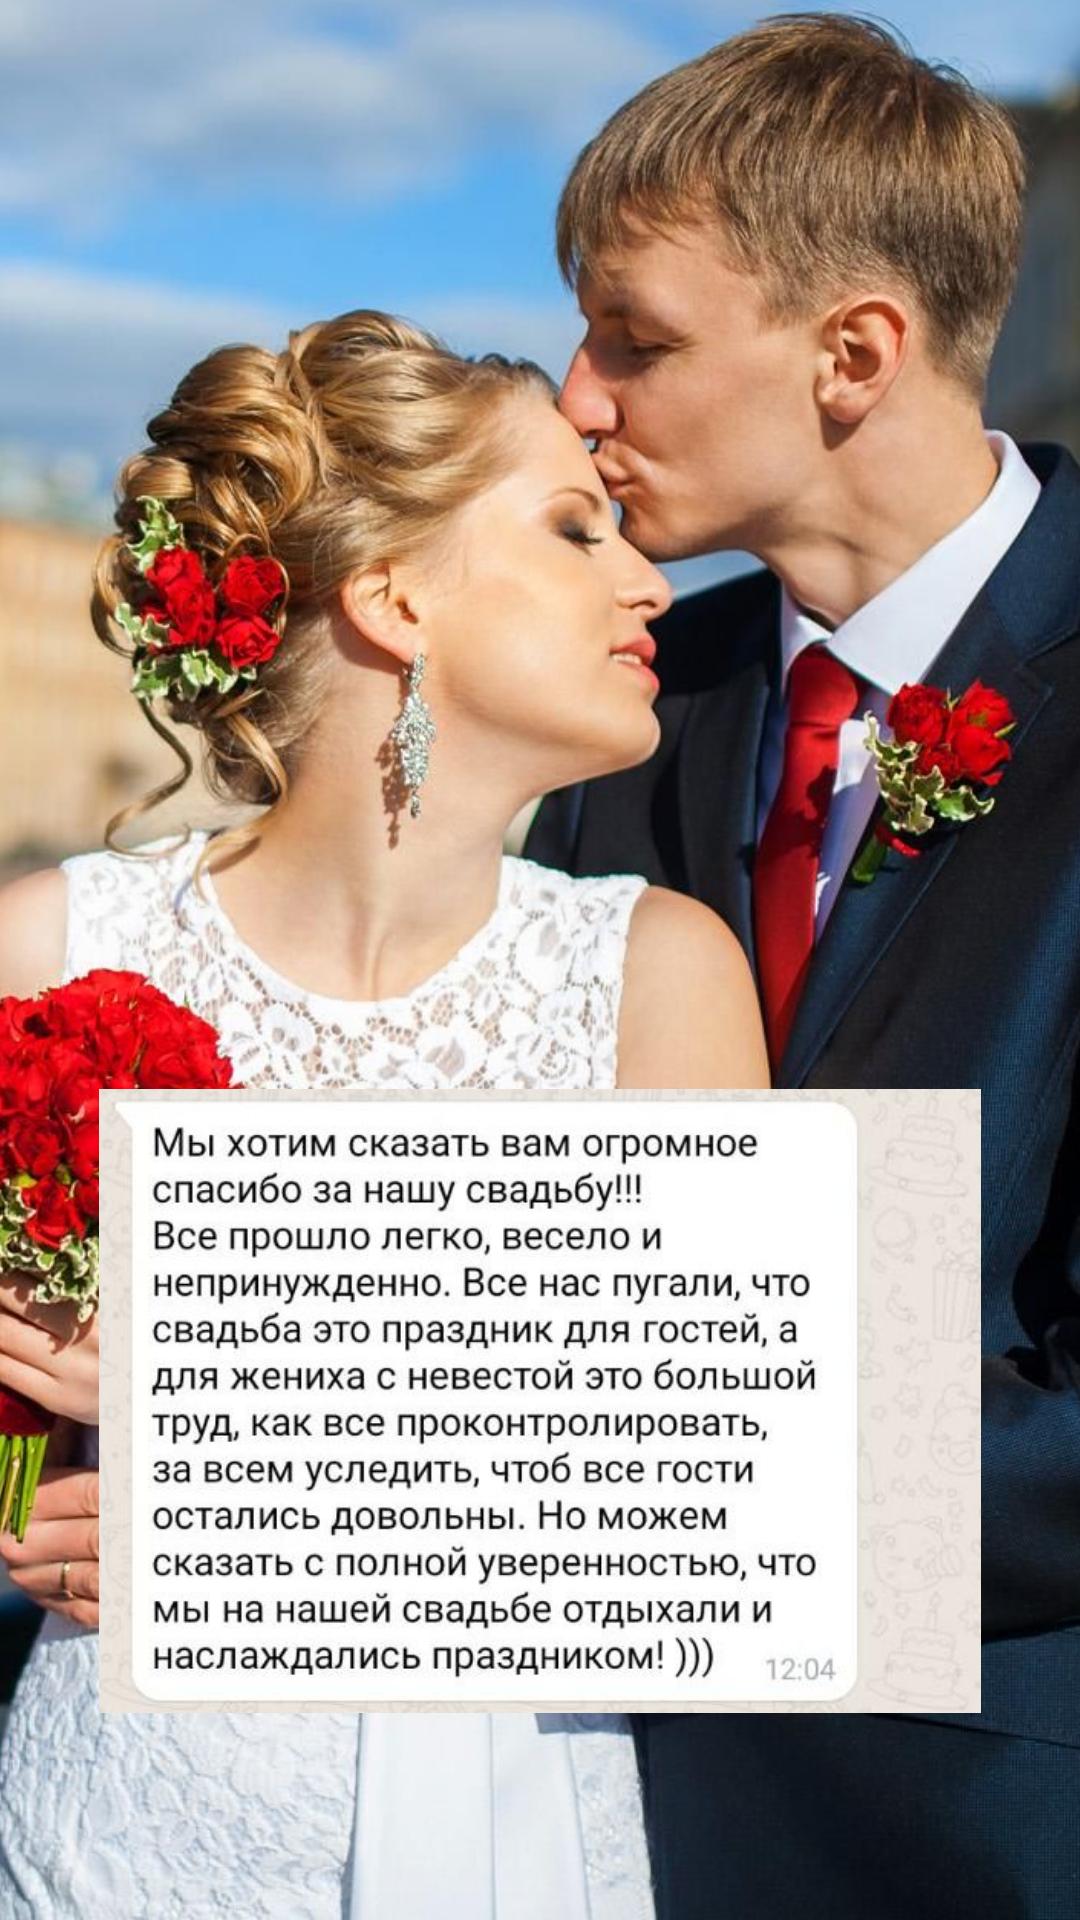 Организация свадьбы в Иваново
от компании Pandaevent